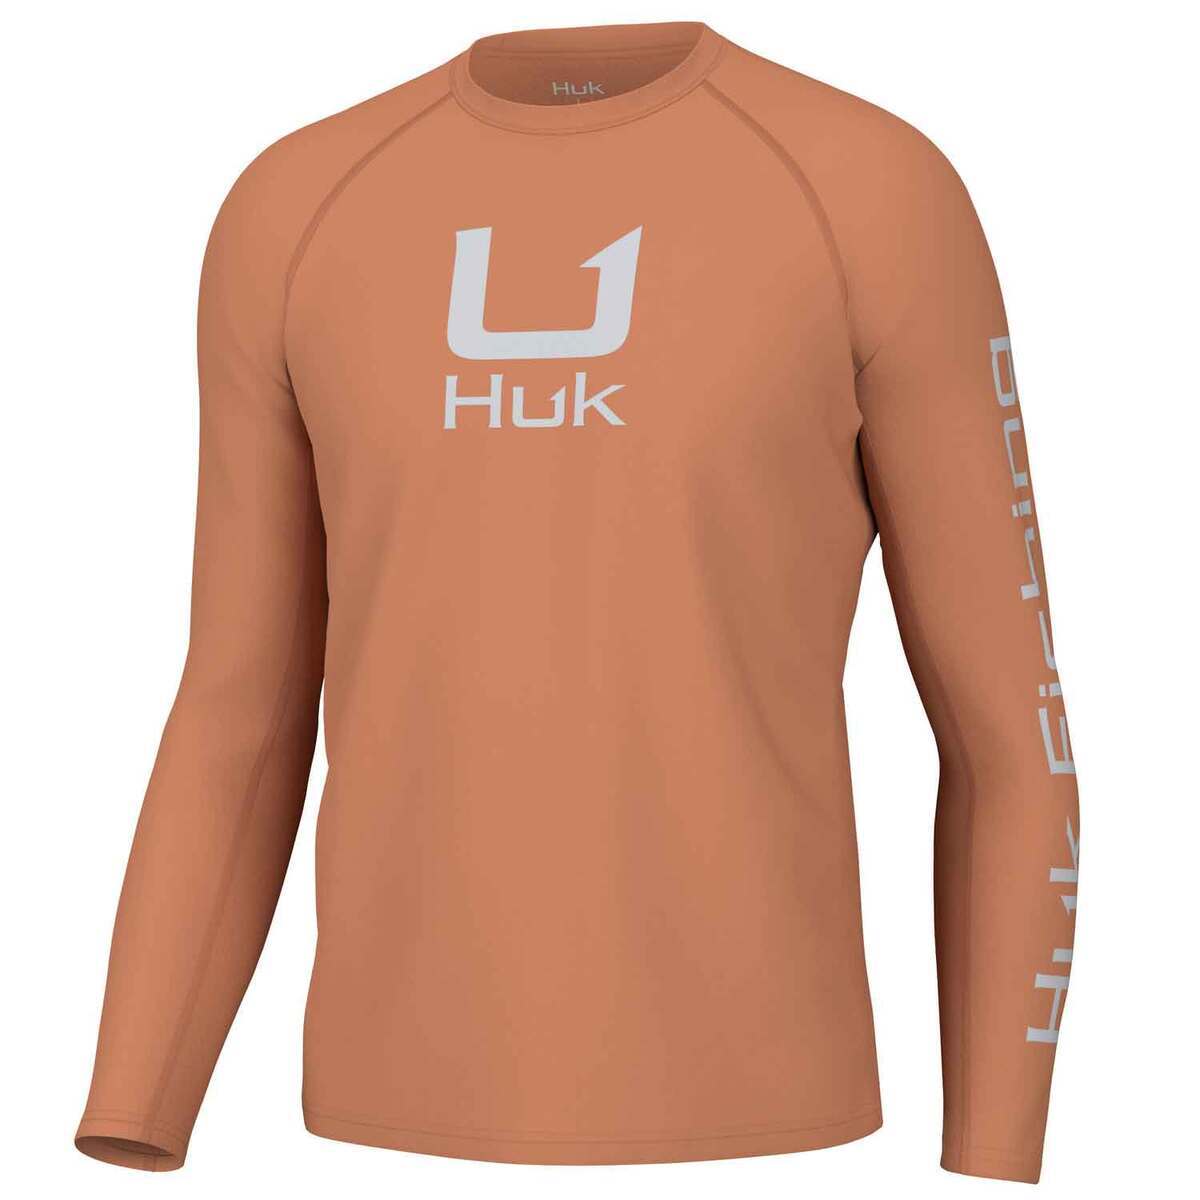 Huk Men's Icon Crew Long Sleeve Fishing Shirt - Sunburn - XL - Sunburn XL